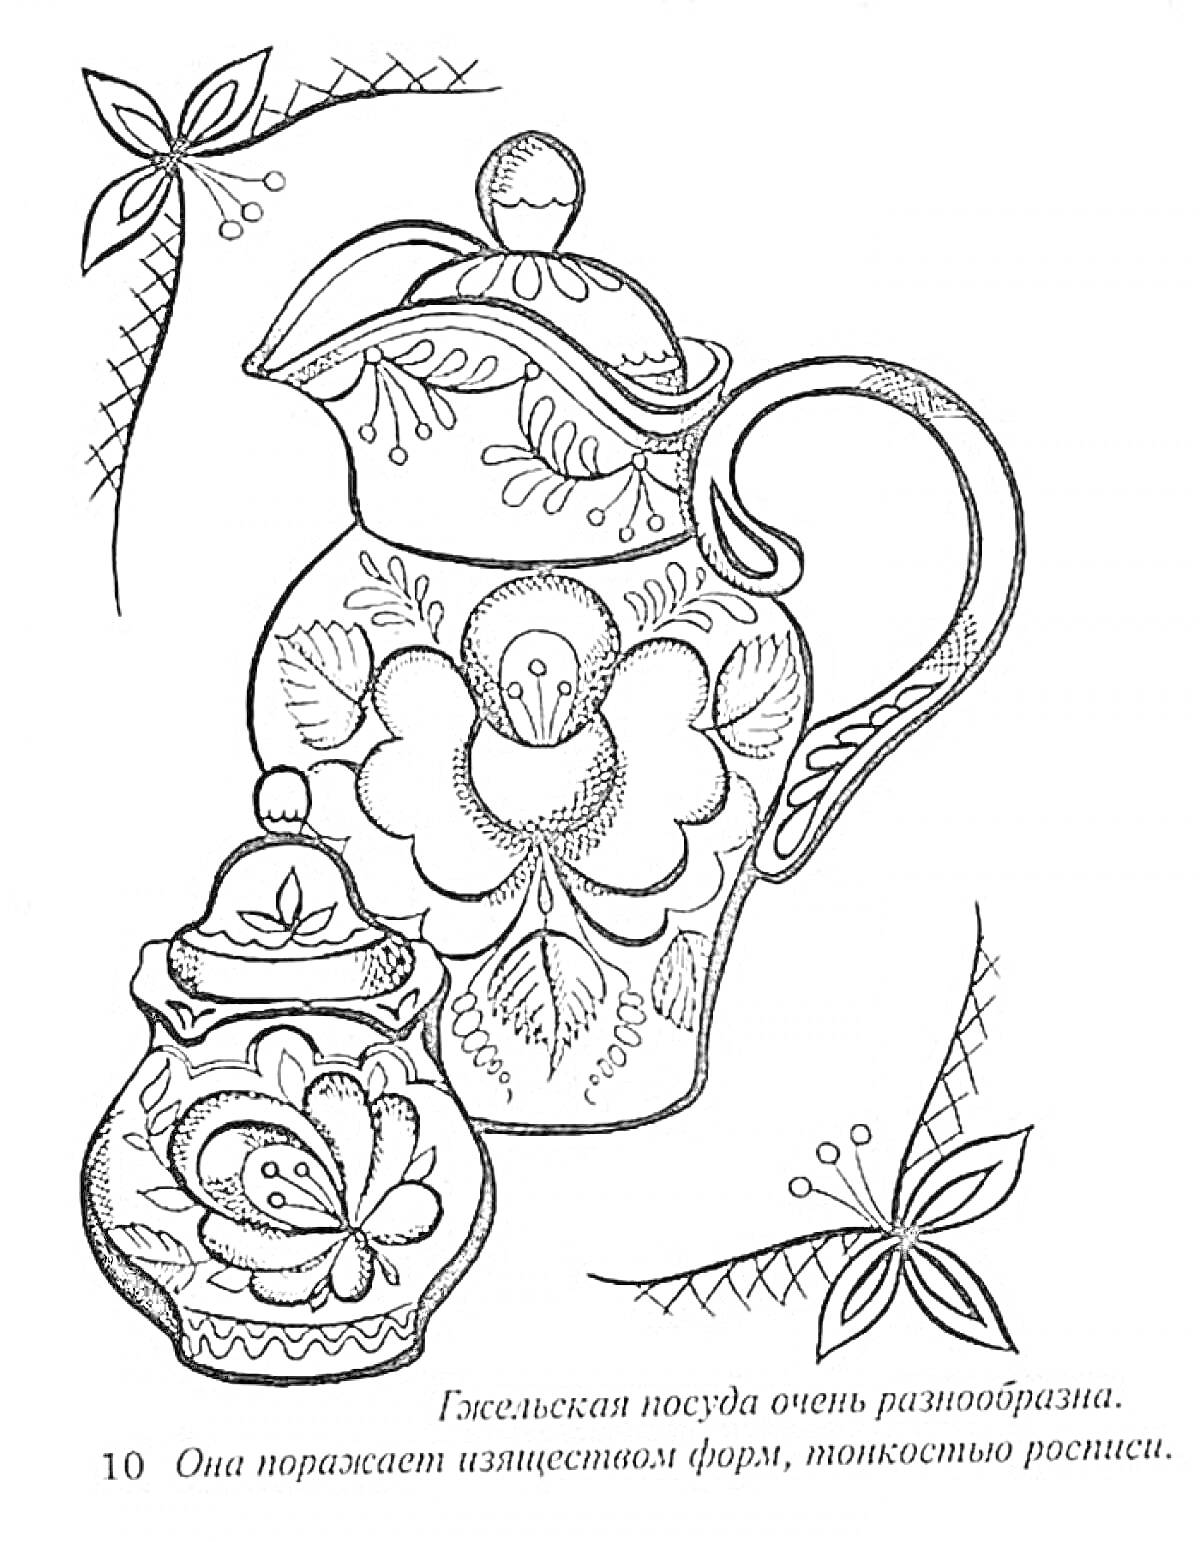 Раскраска Гжельская посуда - кувшин и сахарница с цветочным узором